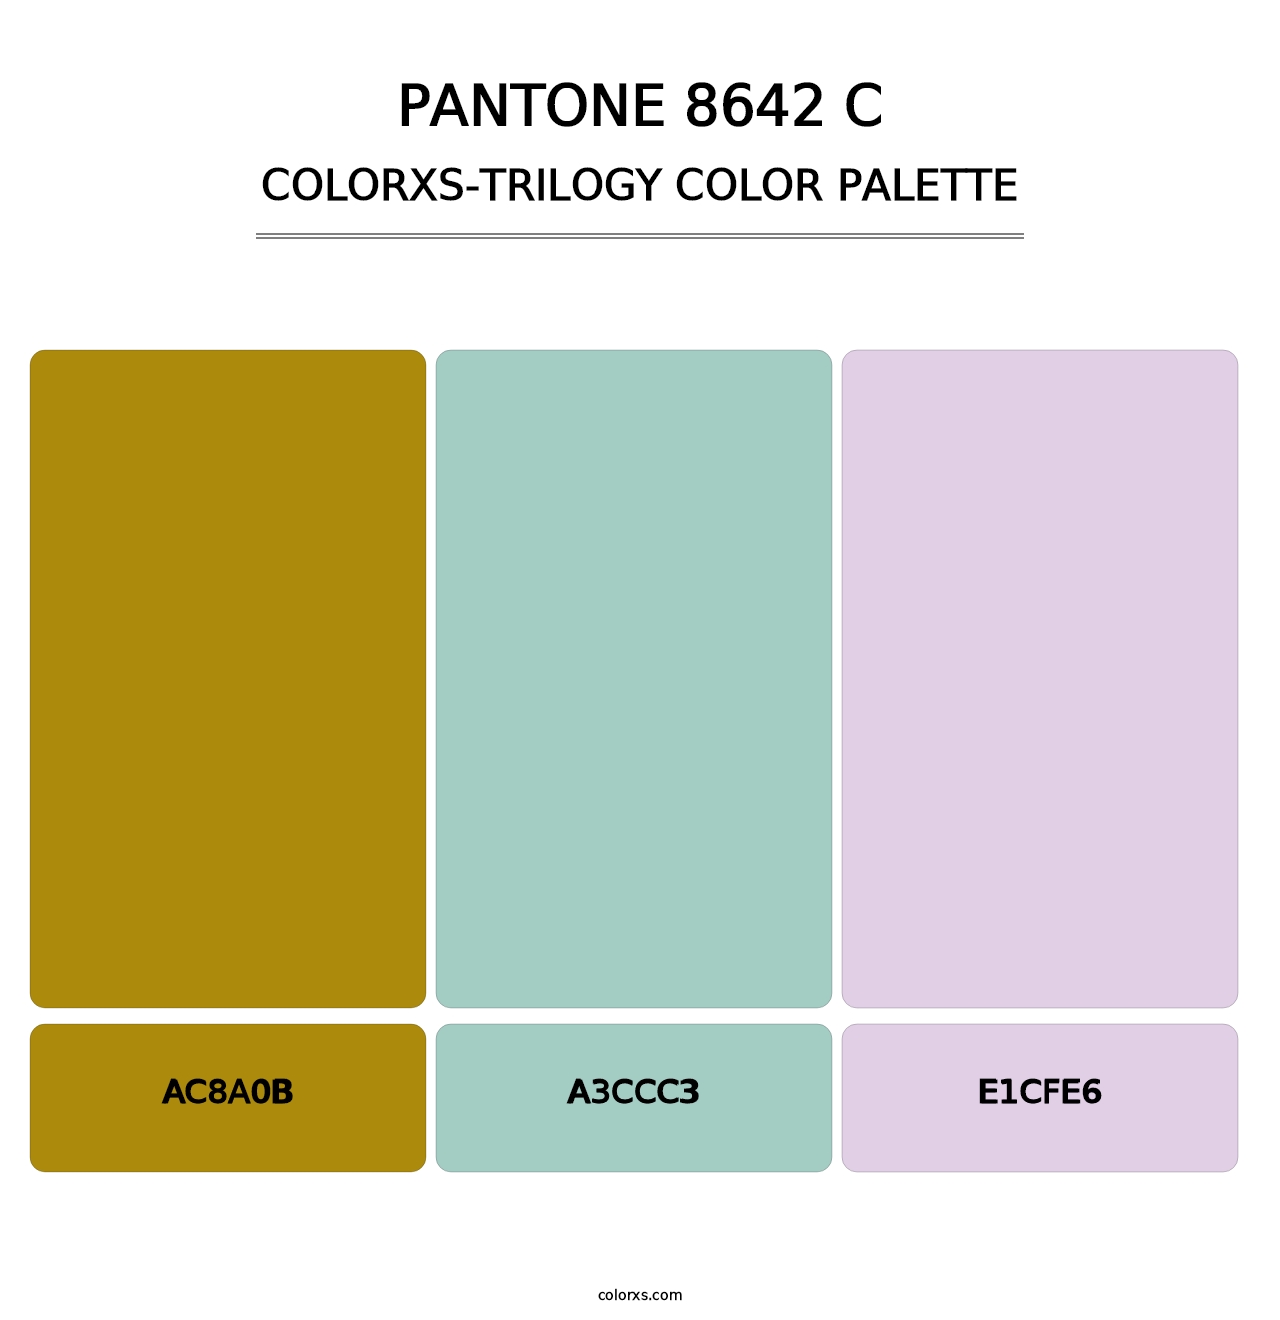 PANTONE 8642 C - Colorxs Trilogy Palette